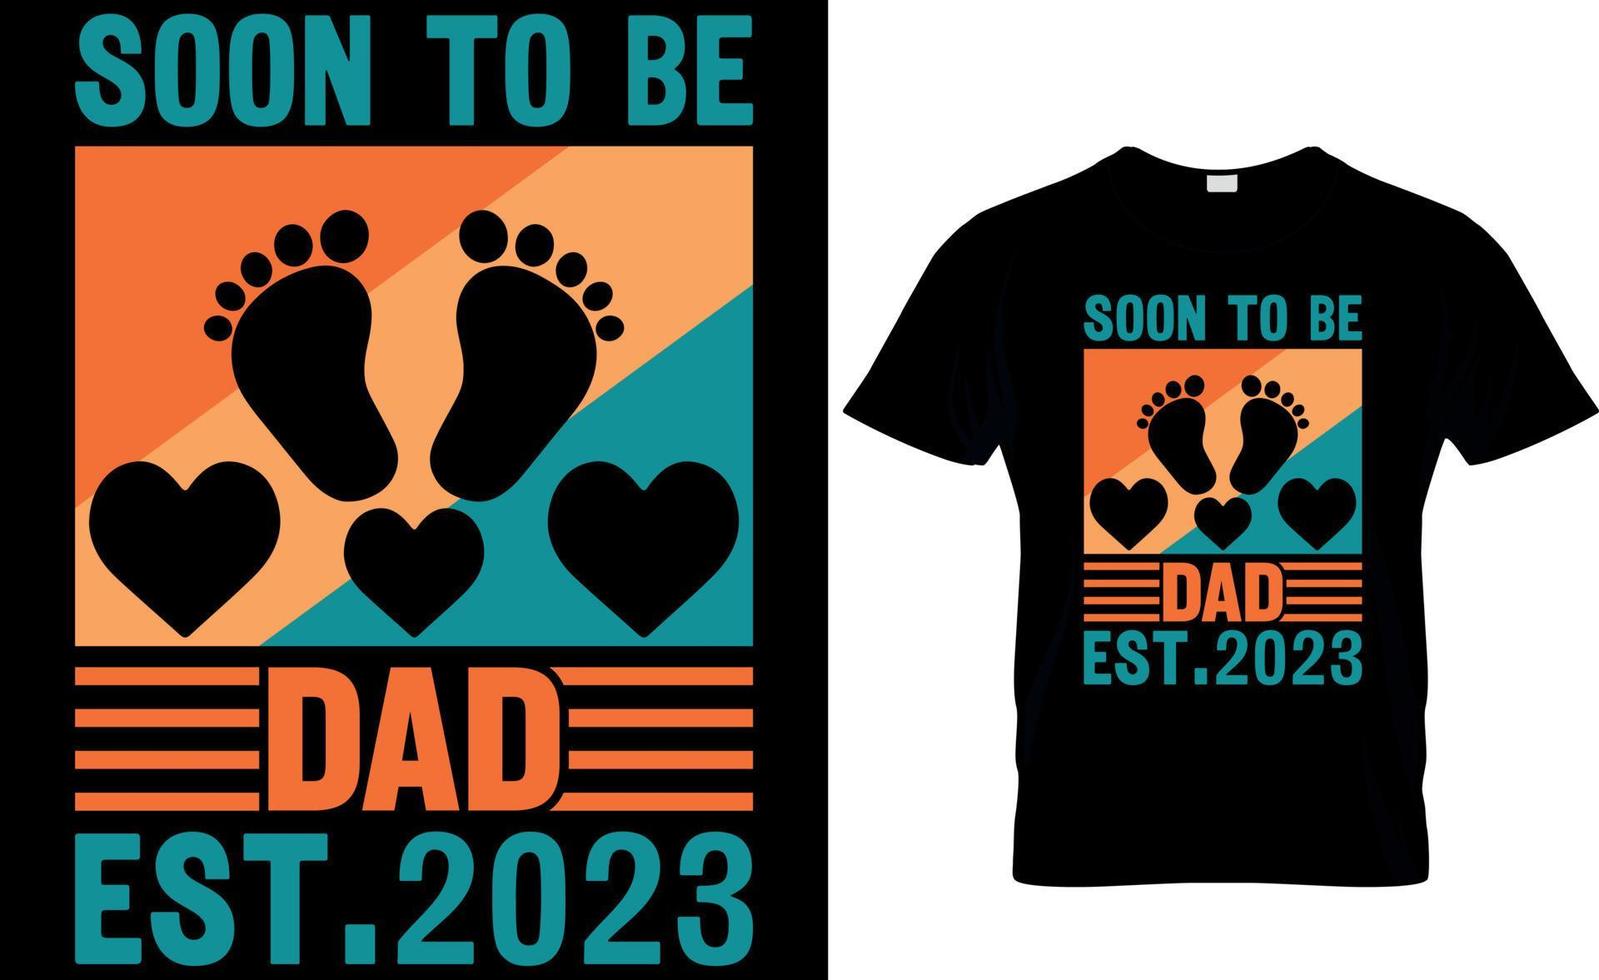 logo para ser papai est.2023. design de camiseta do dia dos pais vetor